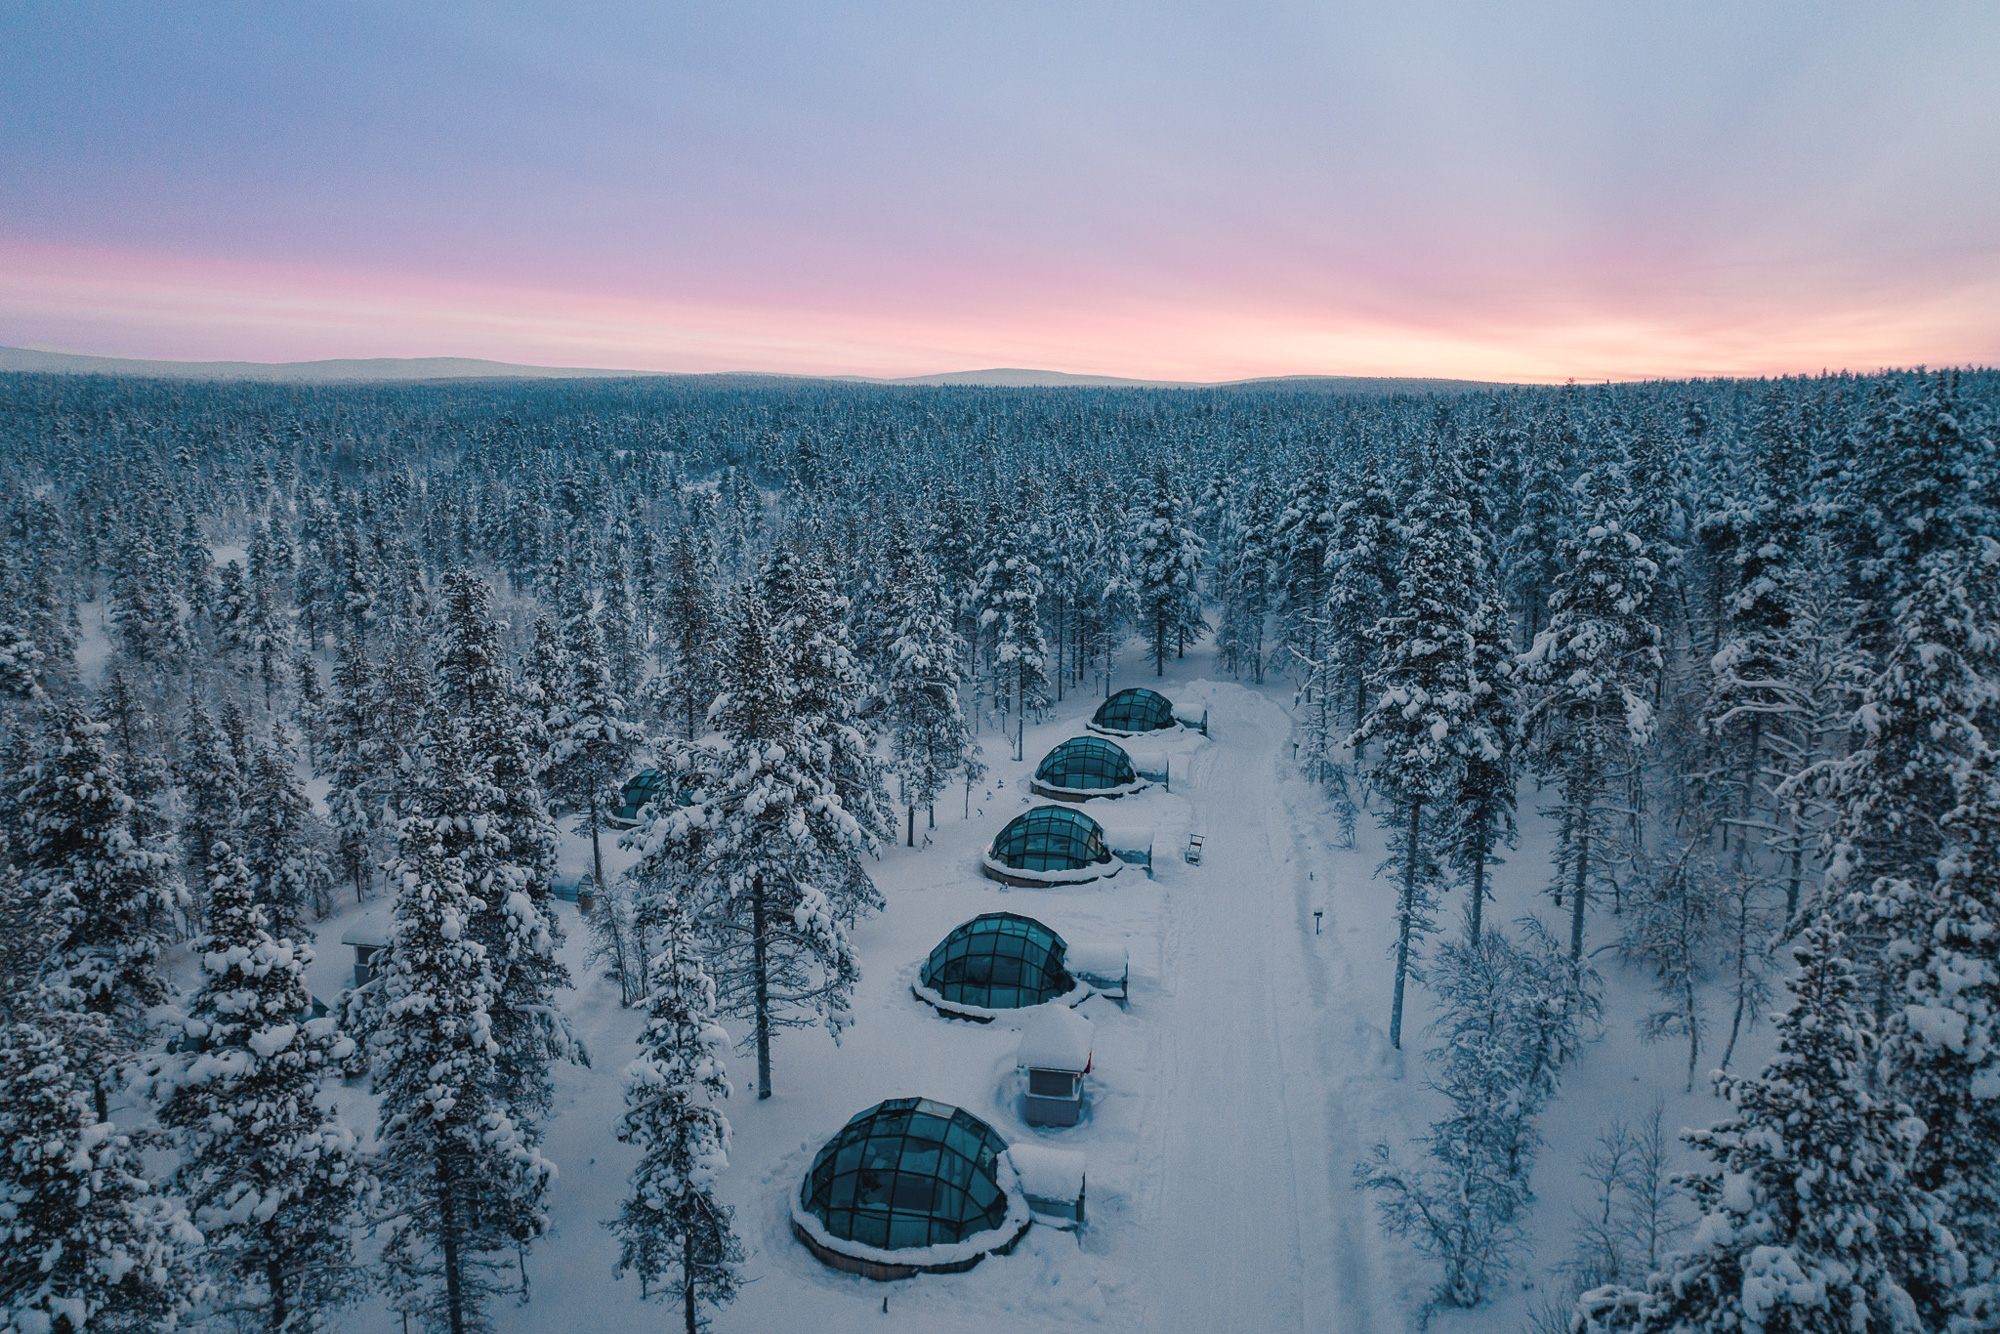 Kakslauttanen Arctic Resort Saariselkä Finland stay Northern Lights